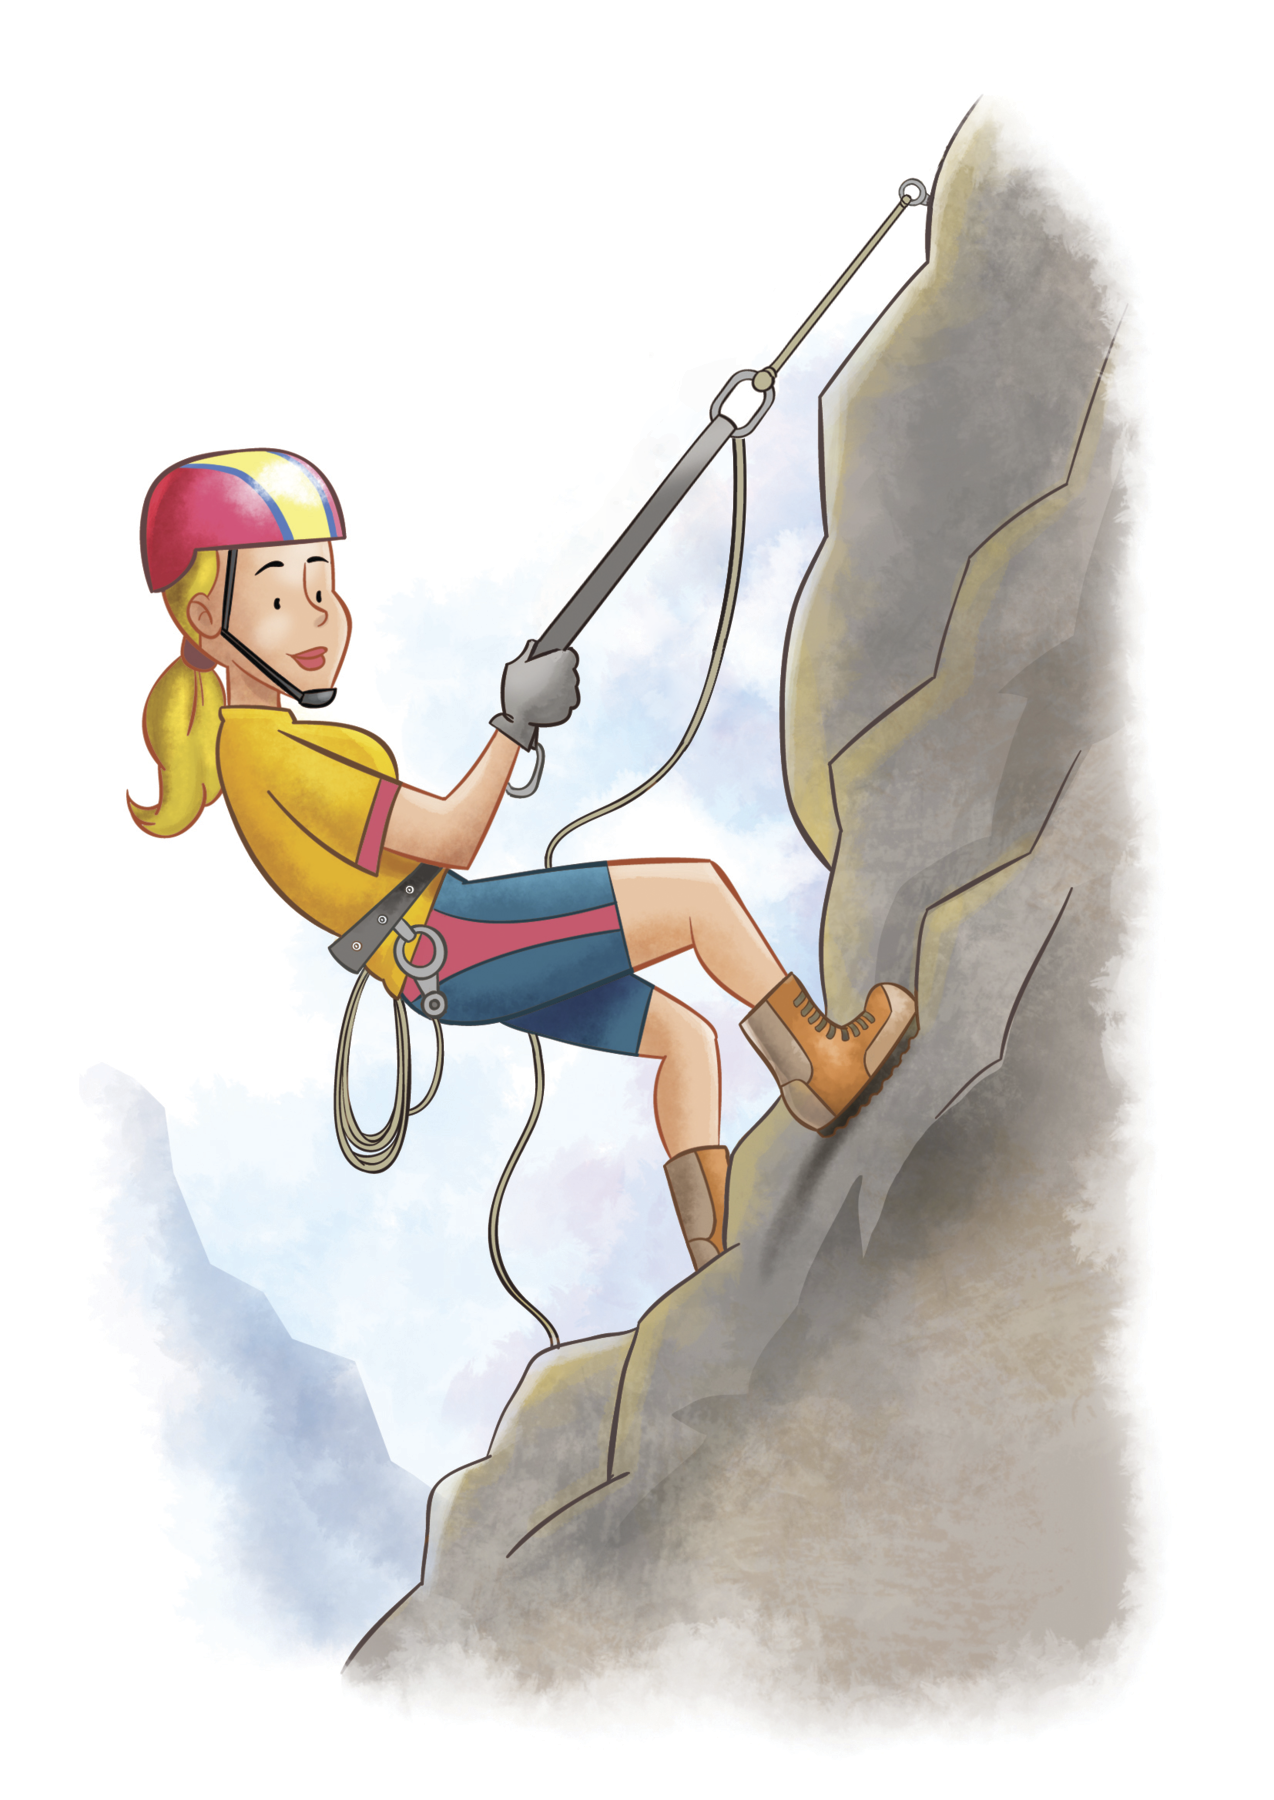 Ilustração: Mulher branca de cabelo loiro, capacete vermelho com uma listra amarela, blusa amarela, bermuda azul com um detalhe vermelho e botas laranjas está segurando cordas e escalando uma montanha.